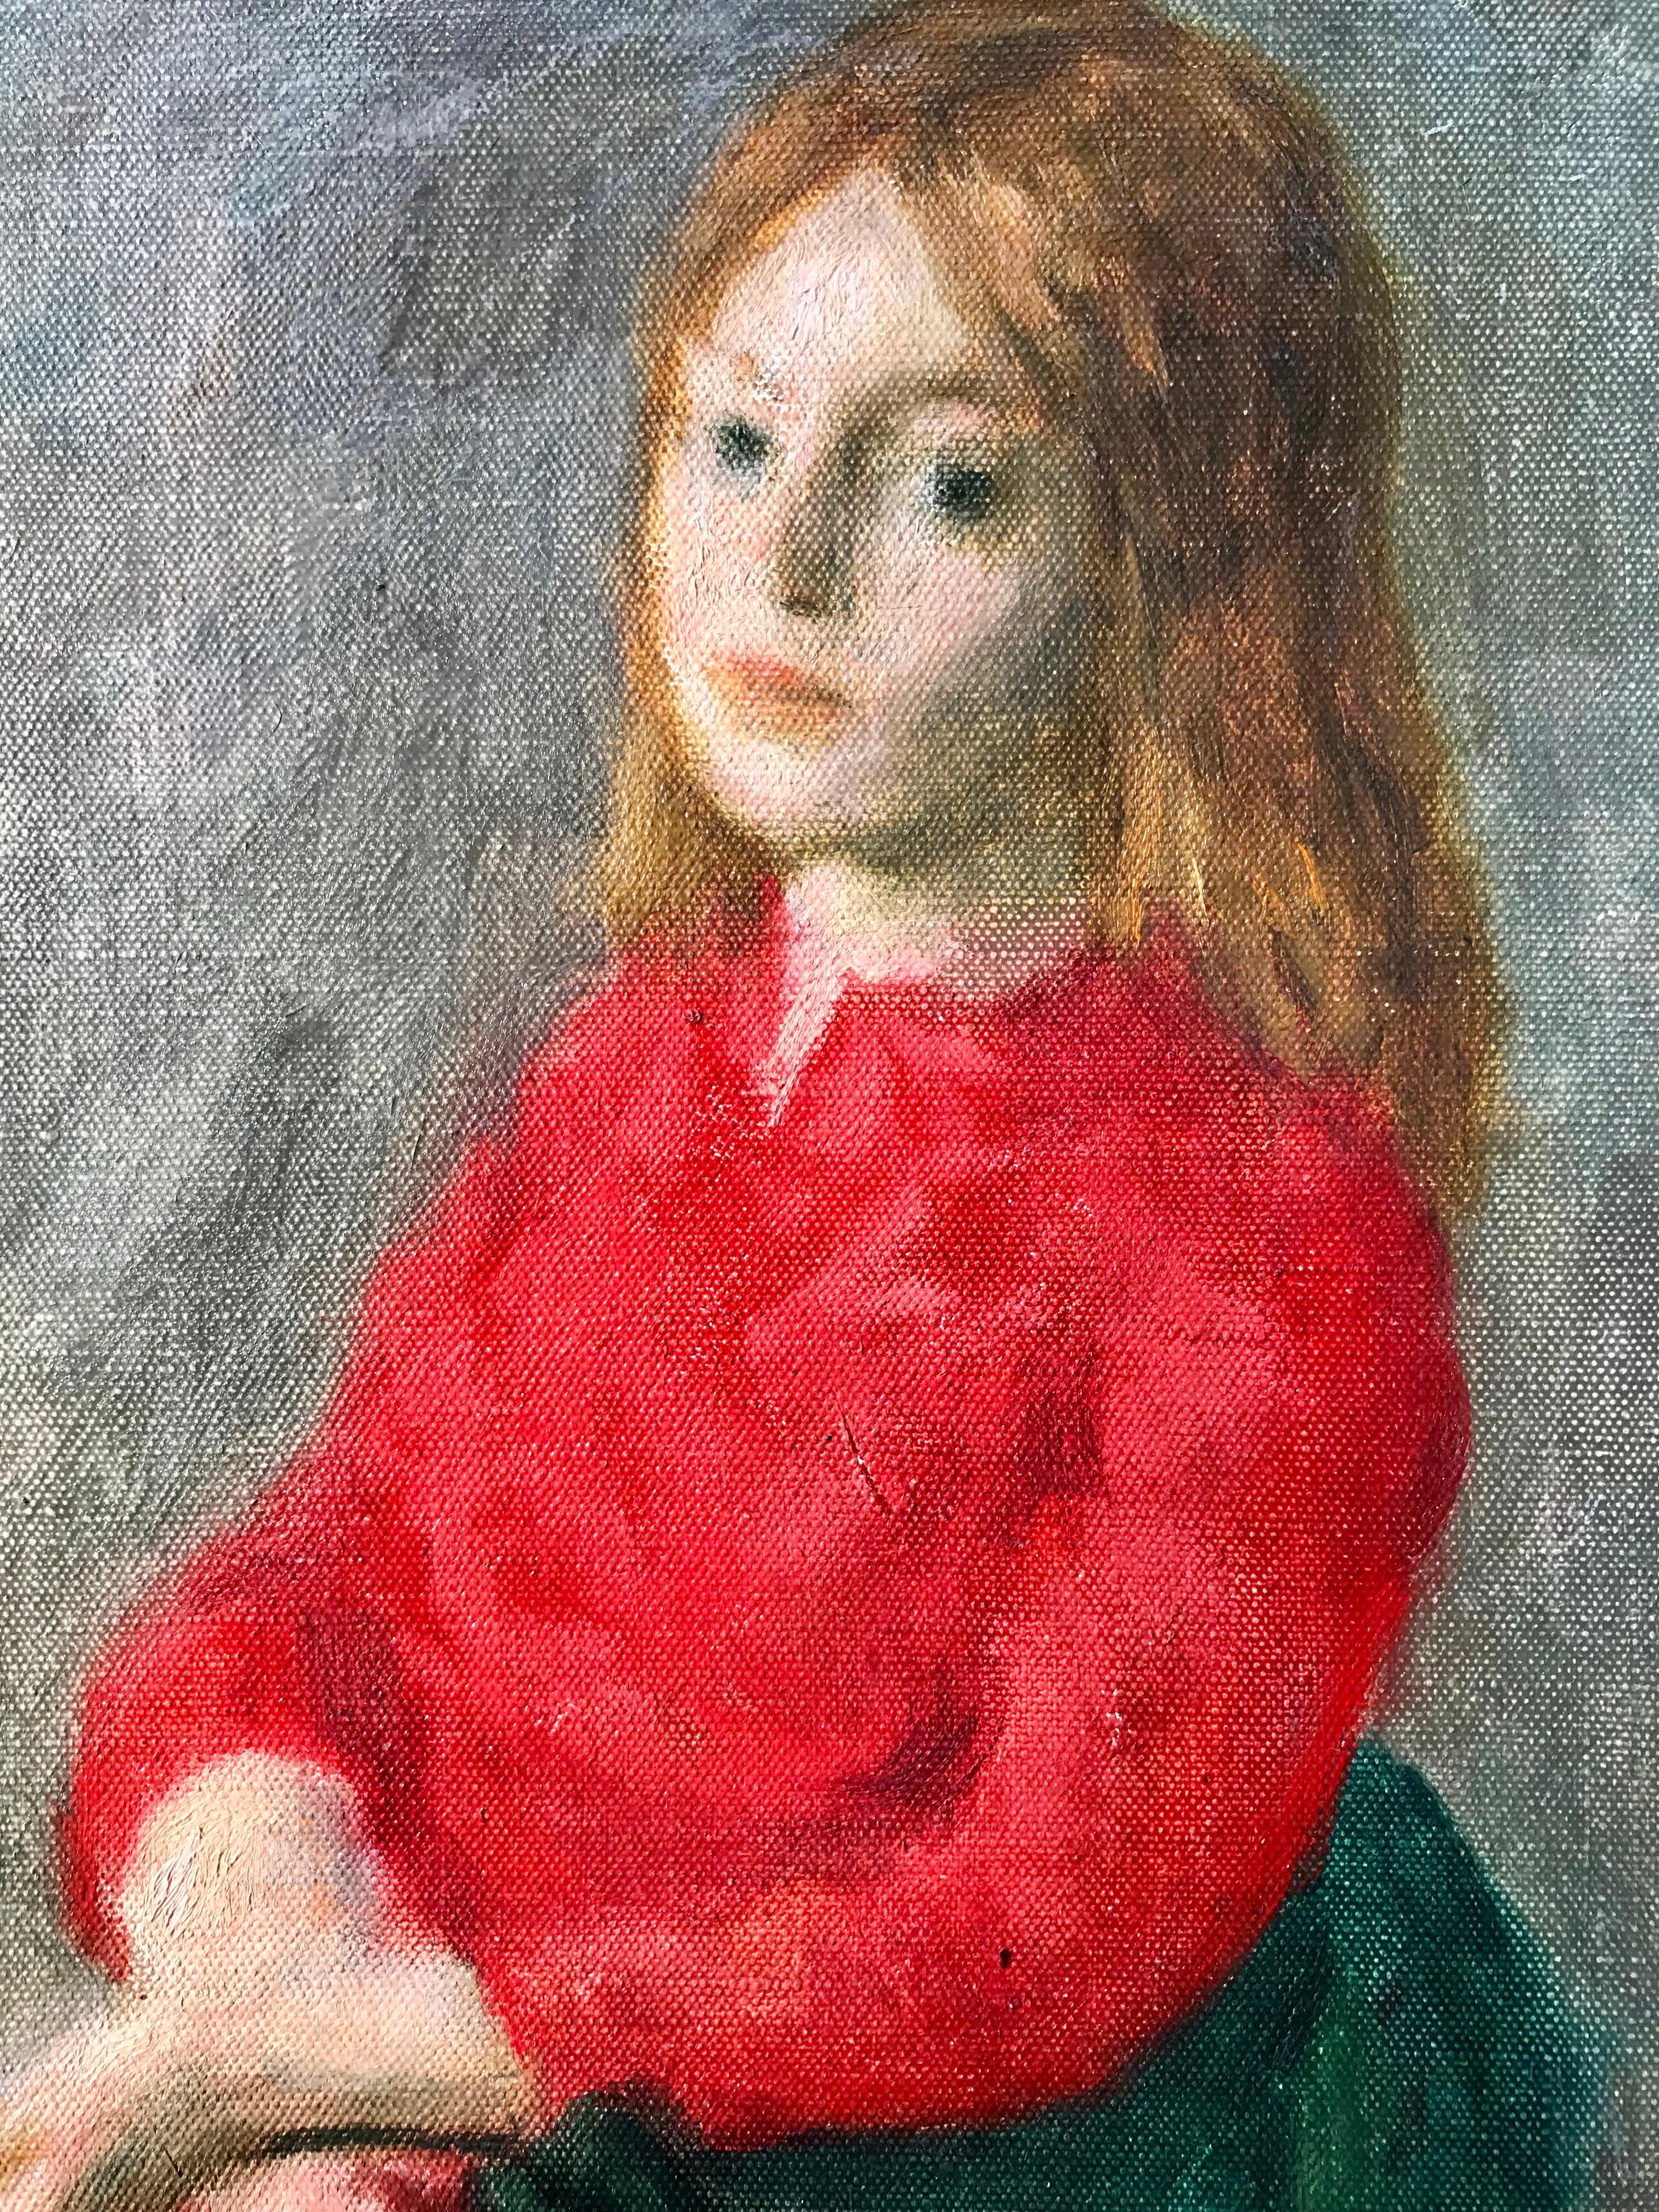 Mädchen in rotem Kleid – Painting von Robert Philipp